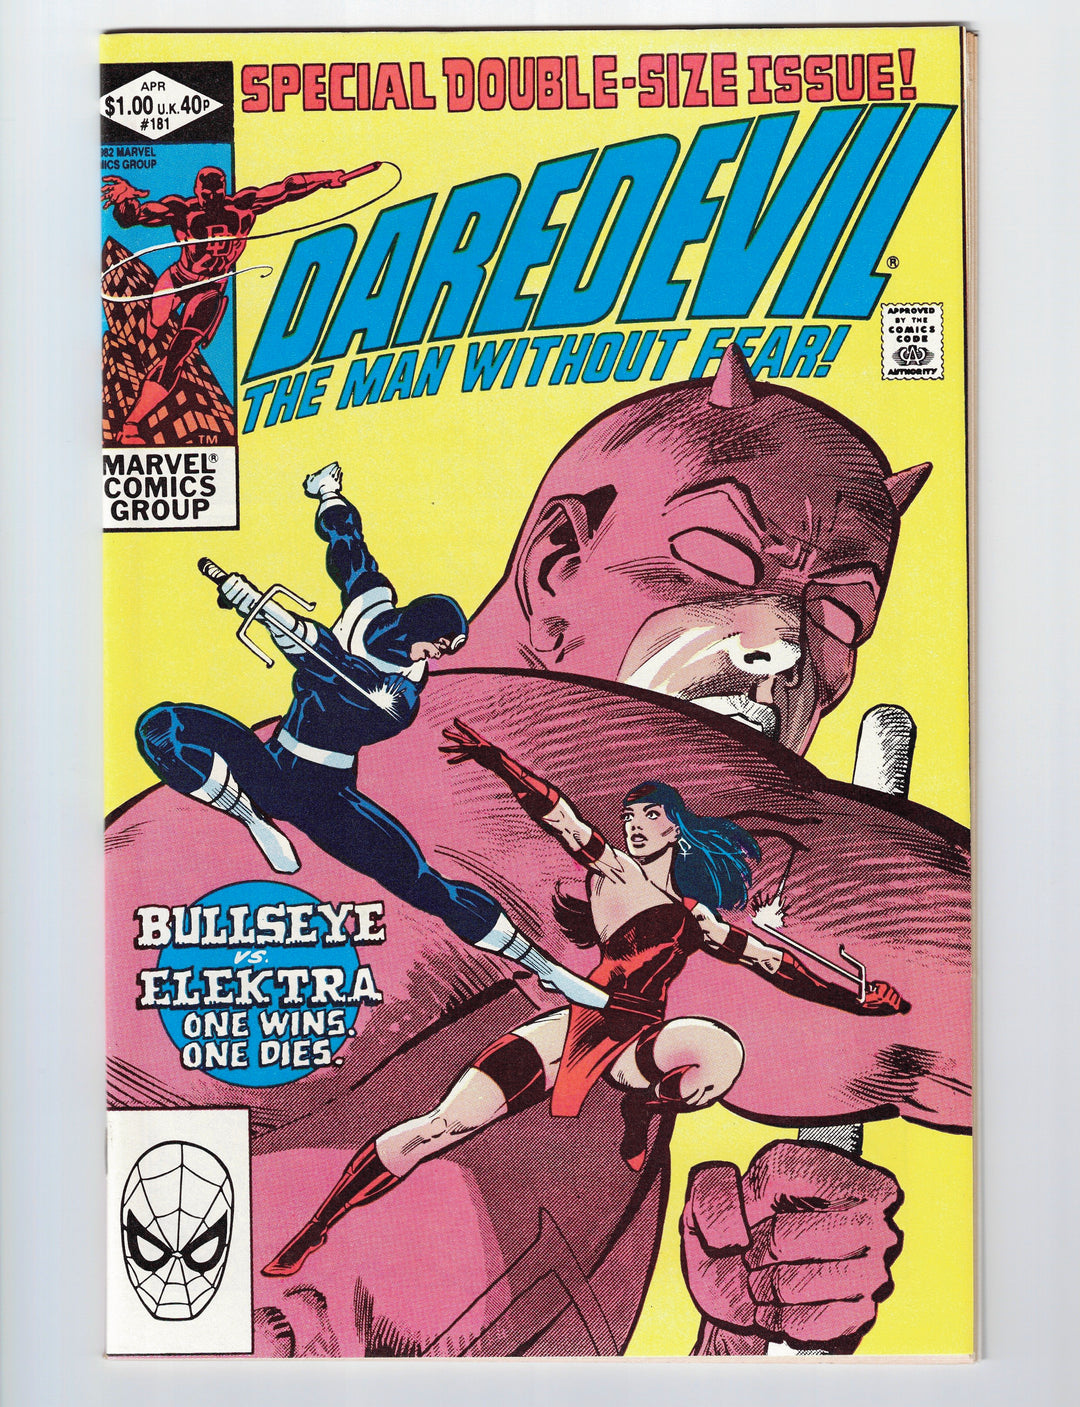 Daredevil #181